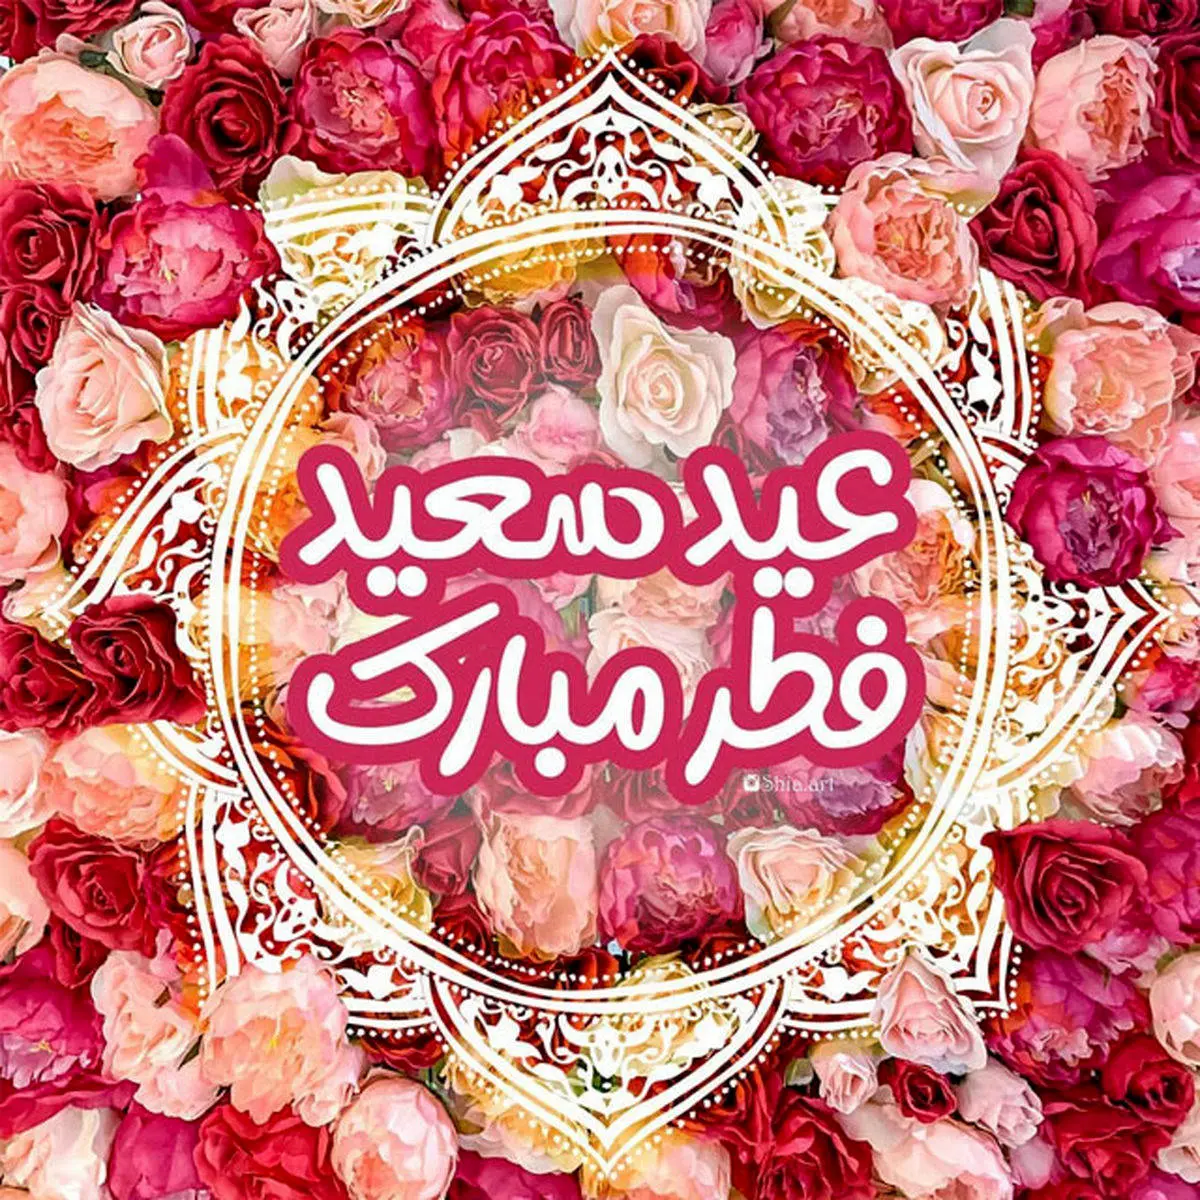 پیام تبریک عید فطر | عکس نوشته تبریک عید فطر